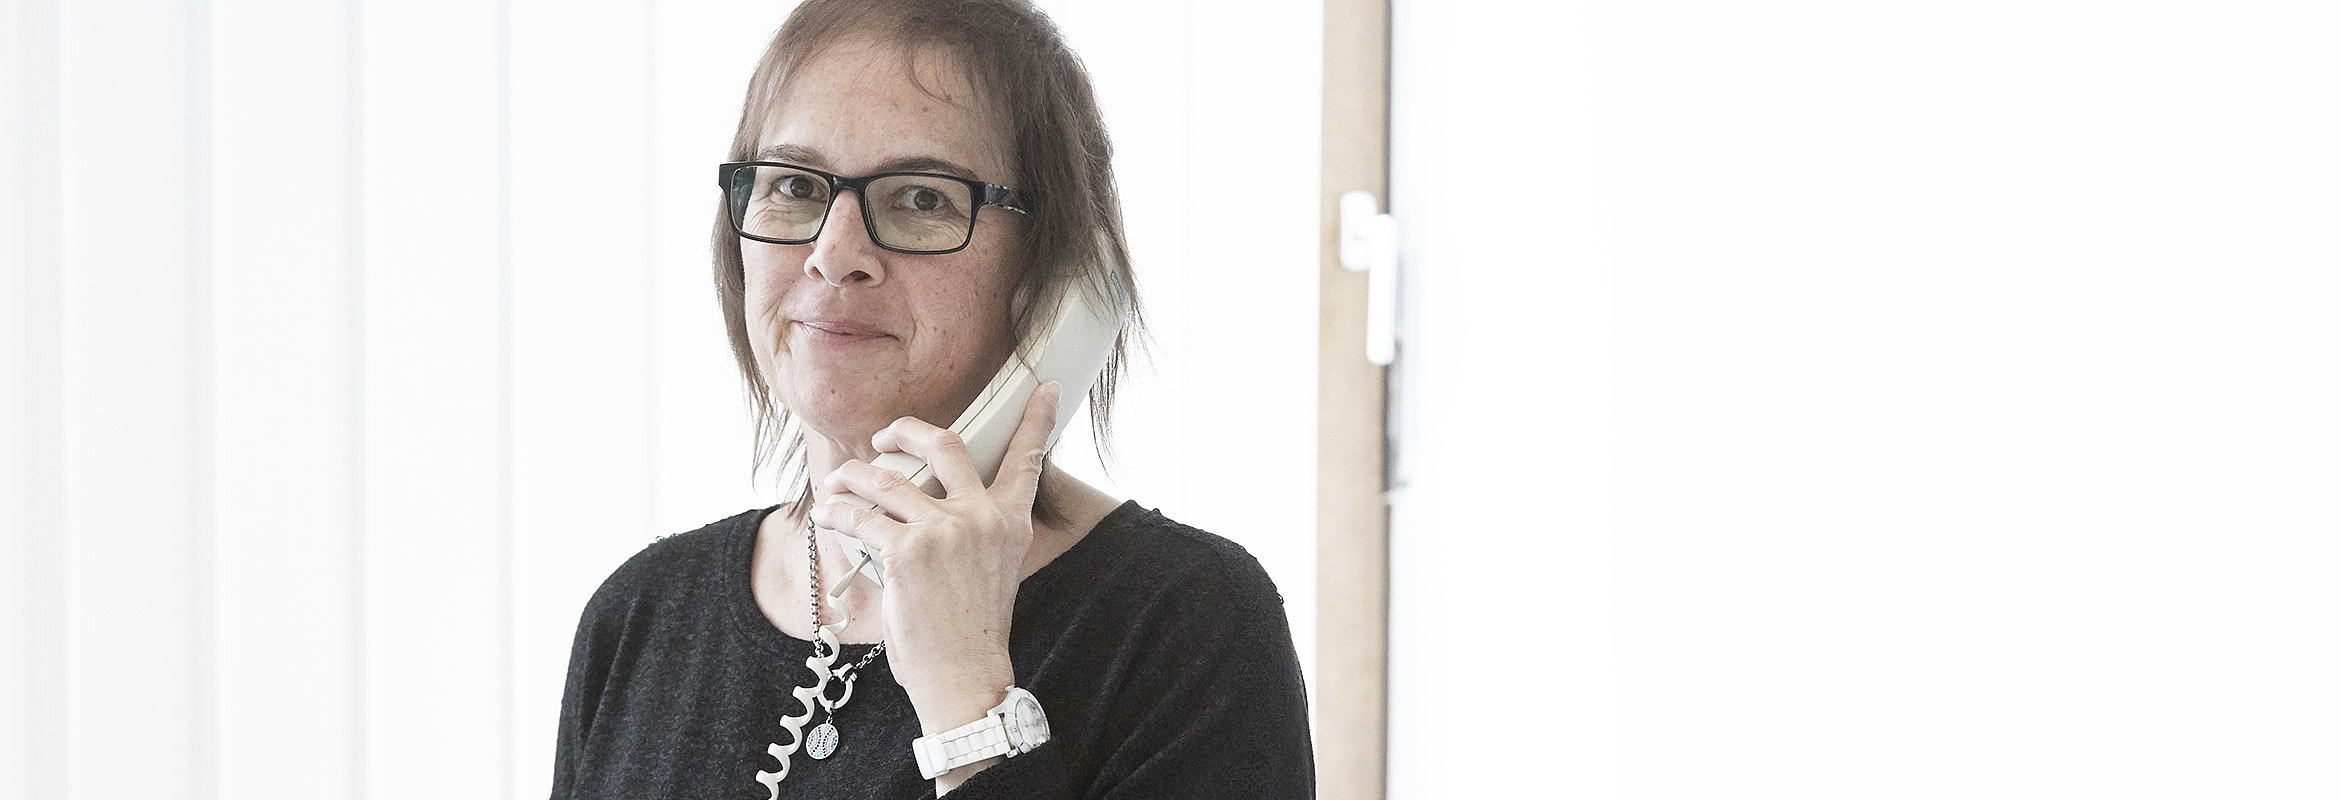 Margit Jacob, Chefarztsekretärin der Klinik für Allgemein- und Gefäßchirurgie in Kusel, am Telefon